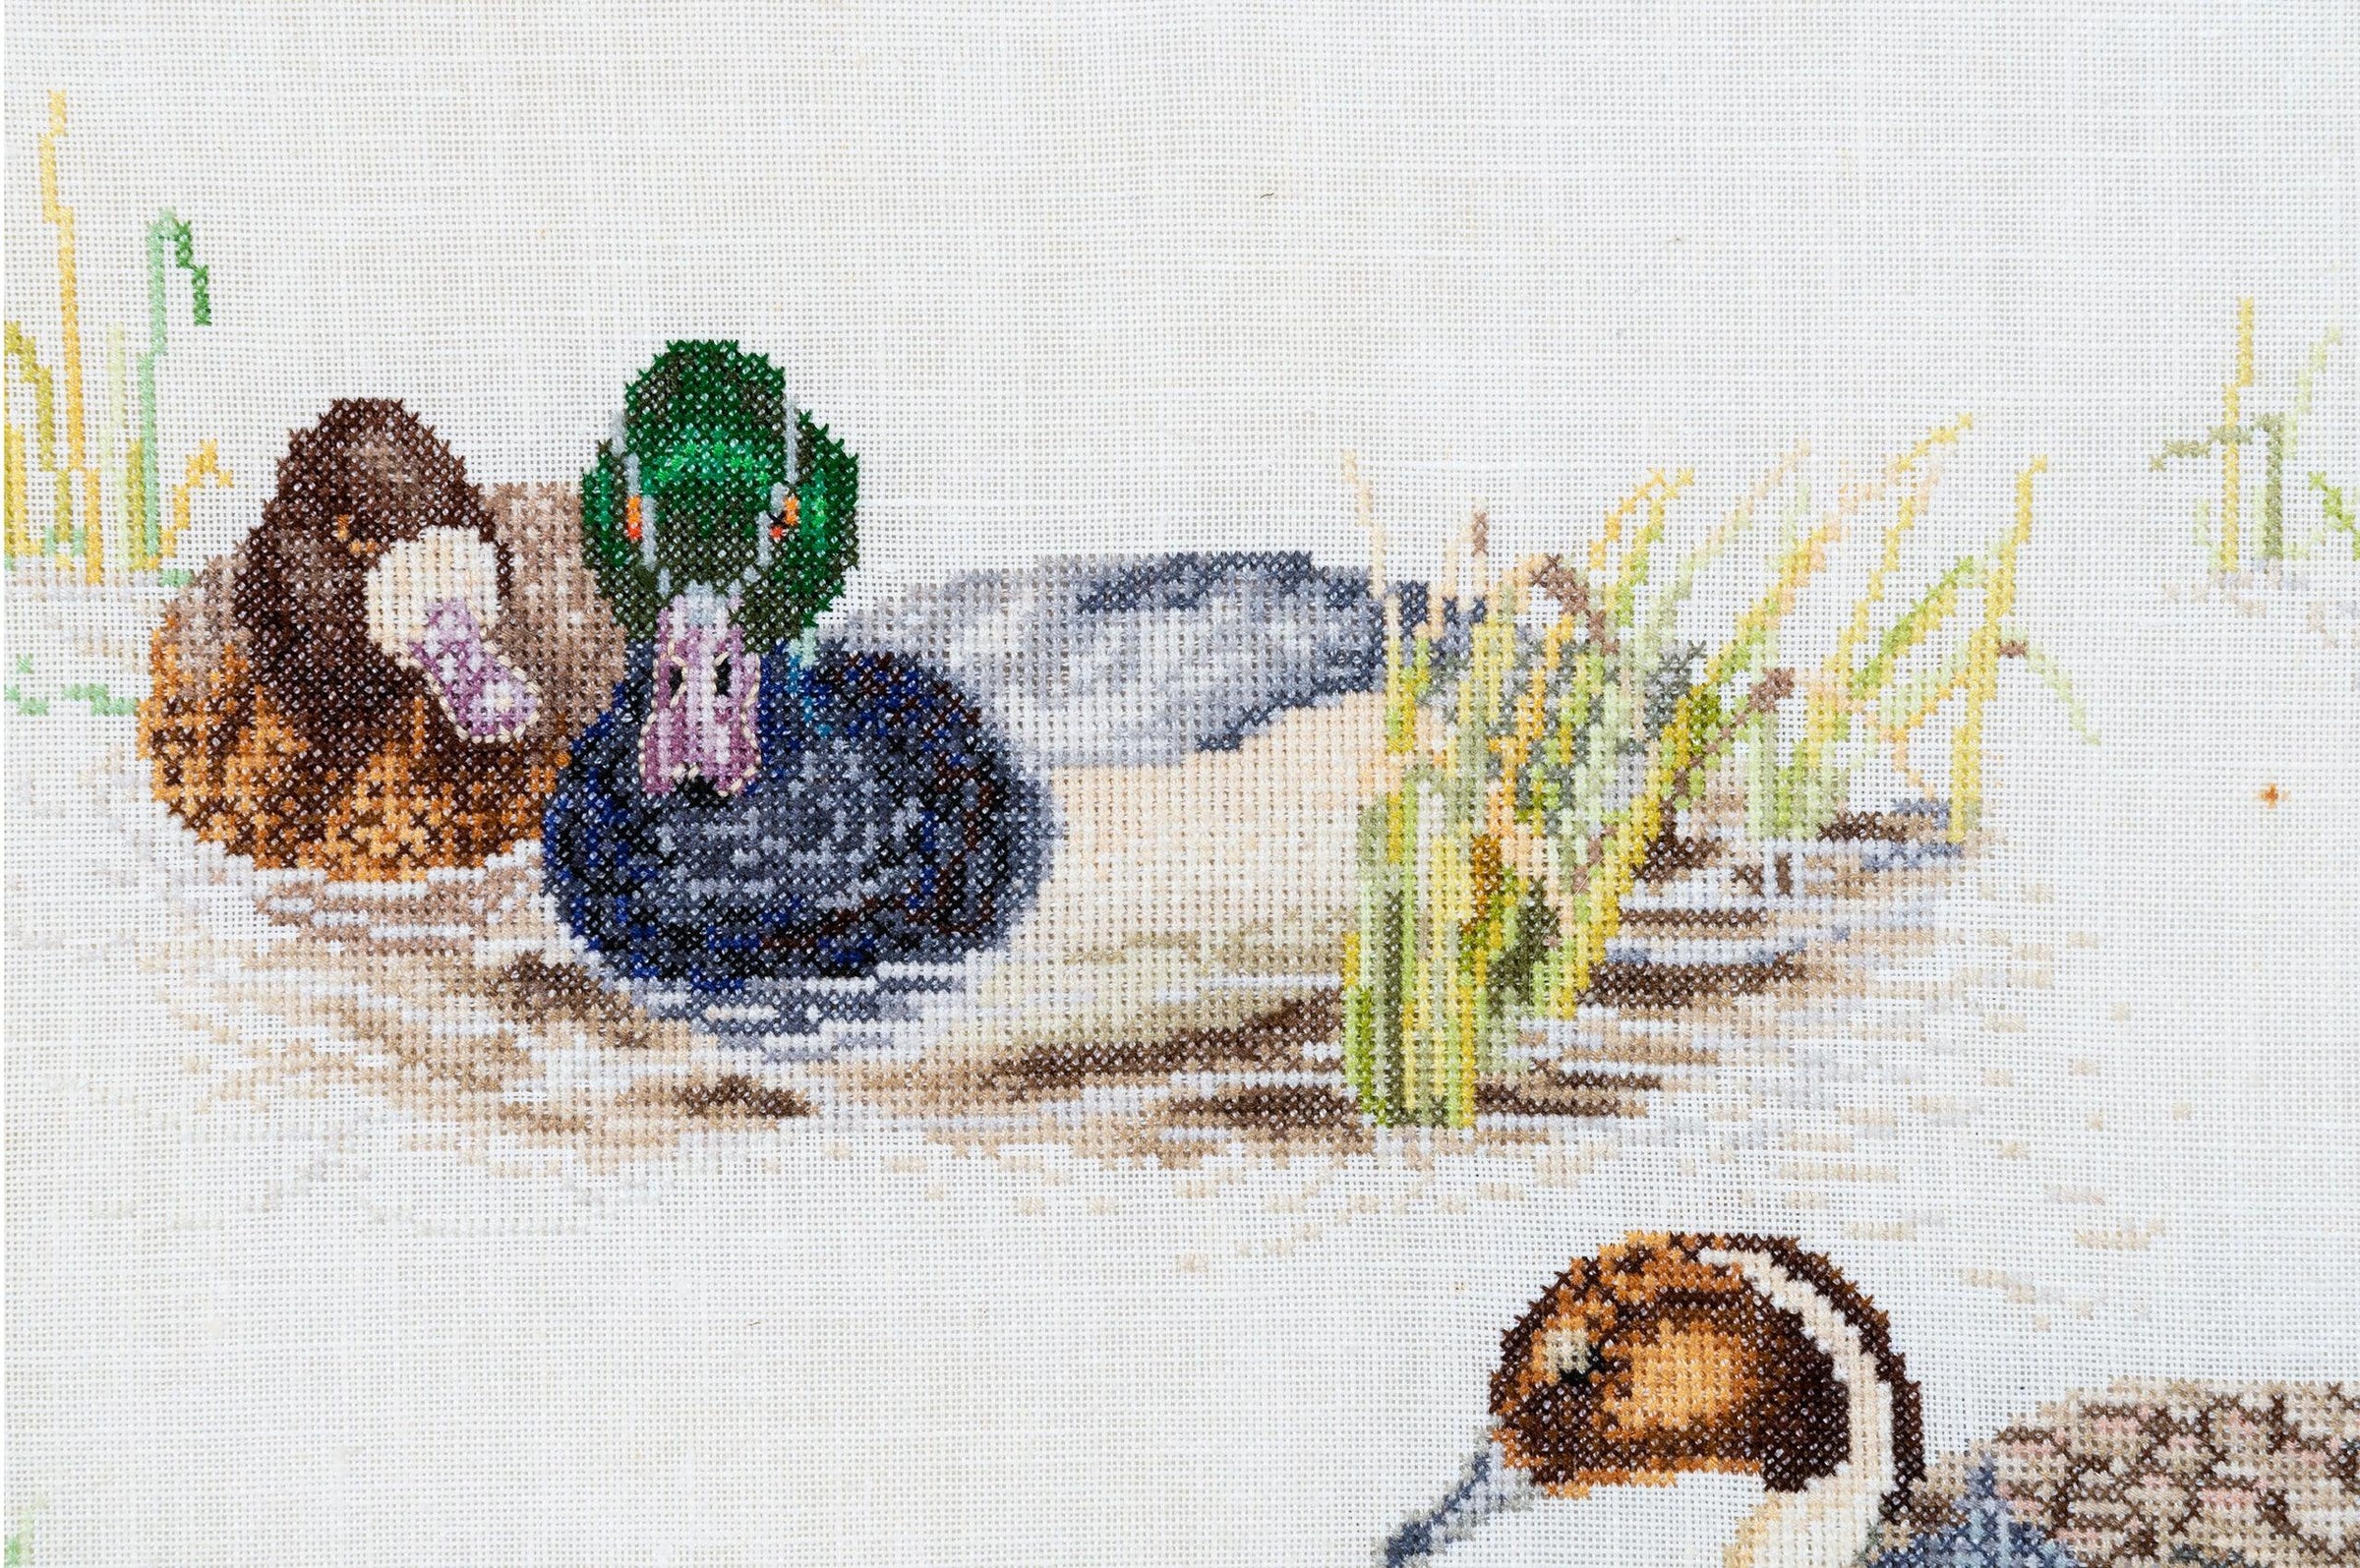 Thea Gouverneur - Counted Cross Stitch Kit - Ducks - Linen - 36 count - 2064 - Thea Gouverneur Since 1959